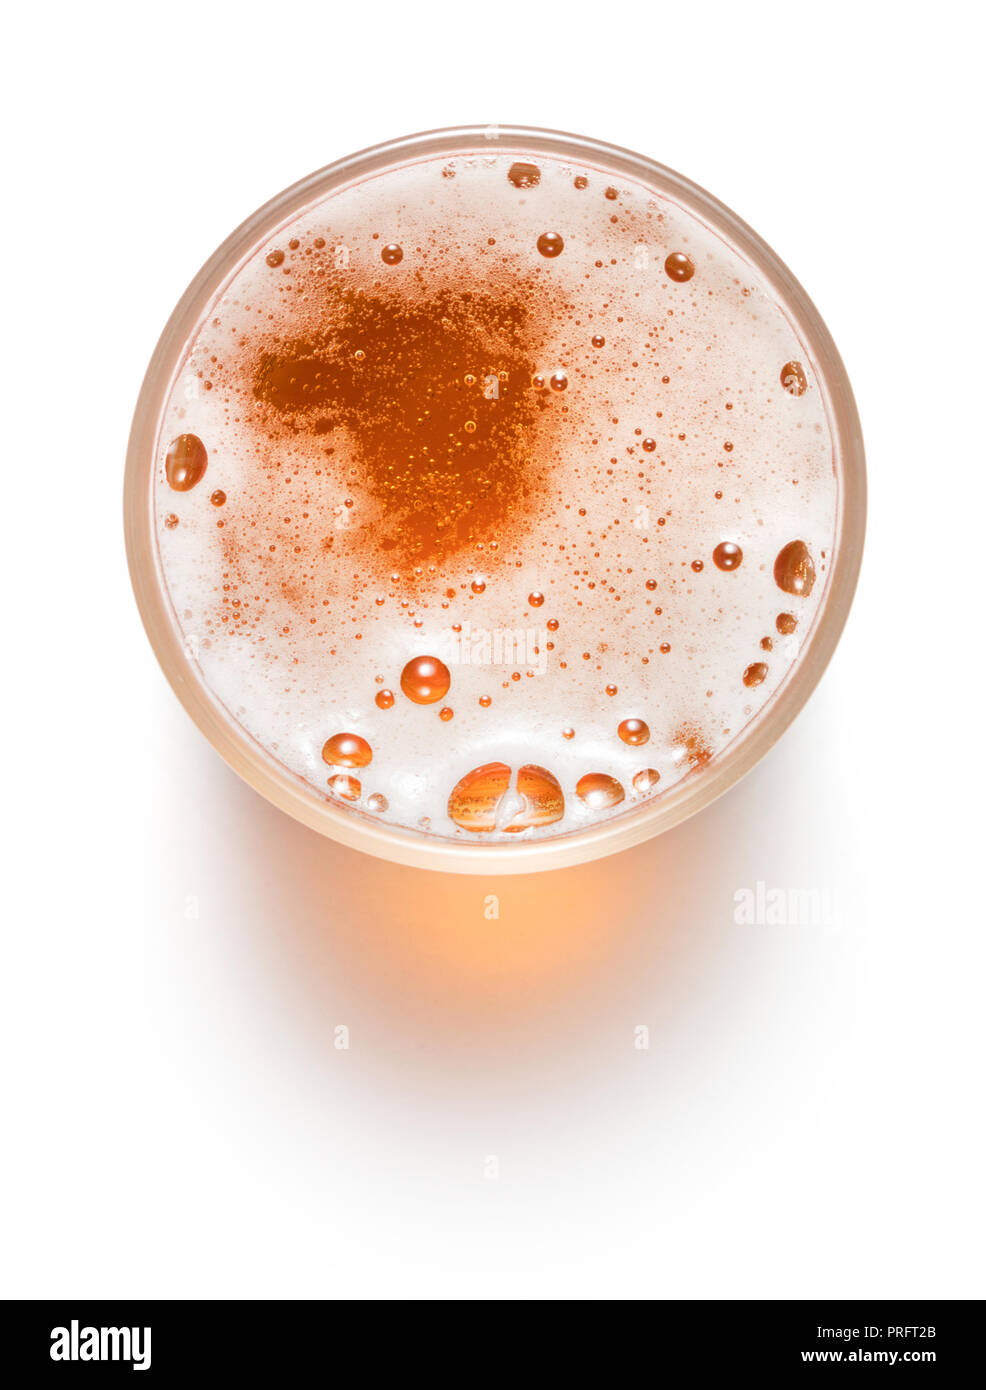 Vista superiore del bicchiere di birra chiara isolati su sfondo bianco Foto Stock